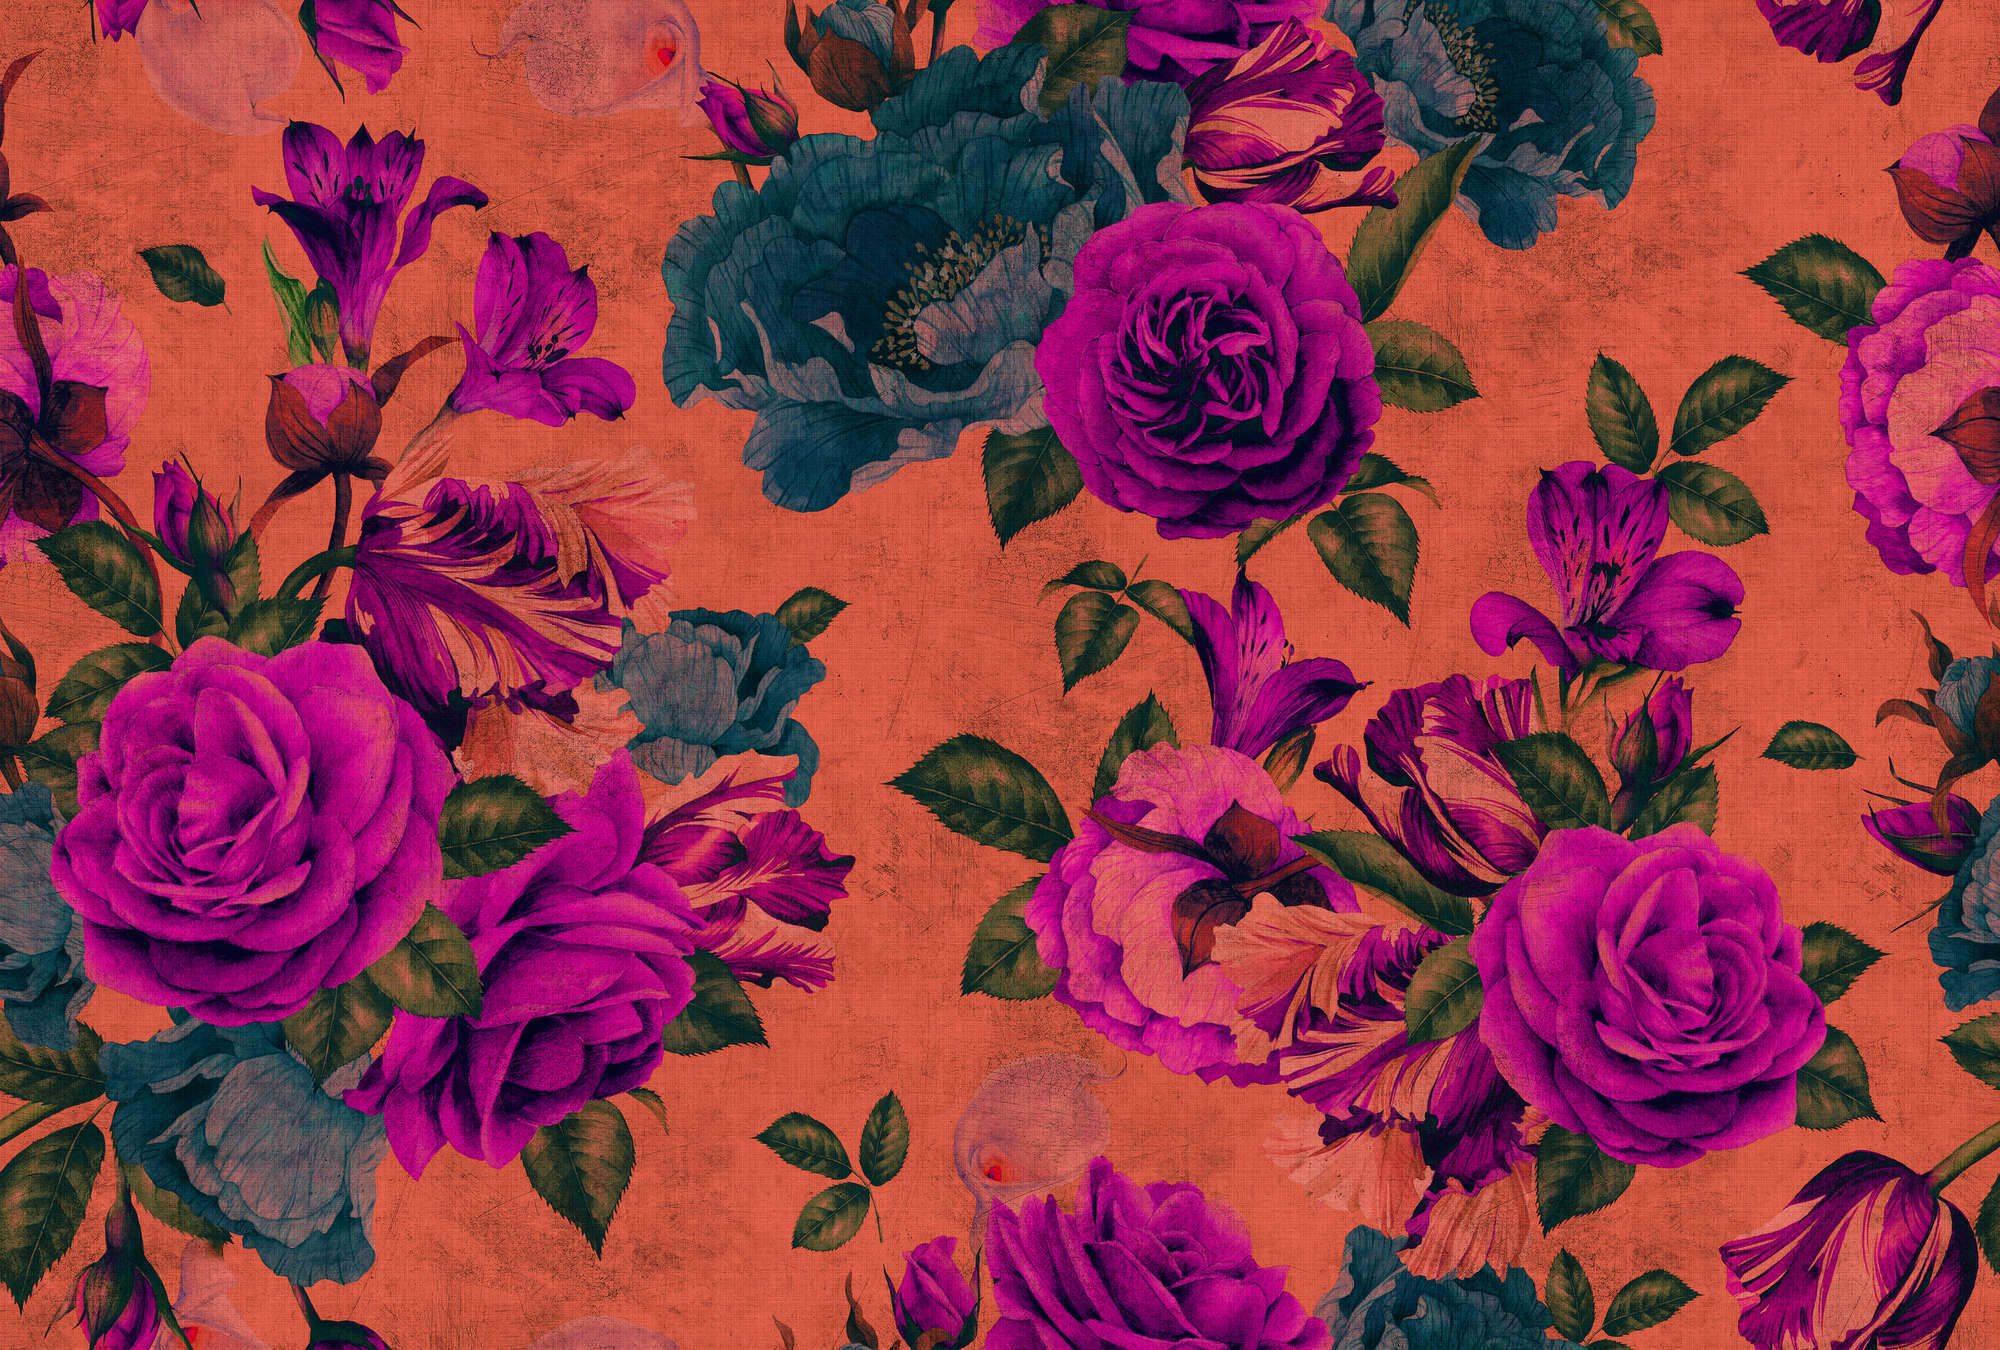             Spanish rose 2 - papier peint fleurs de rosier,texture naturelle avec couleurs vives - orange, violet | Intissé lisse mat
        